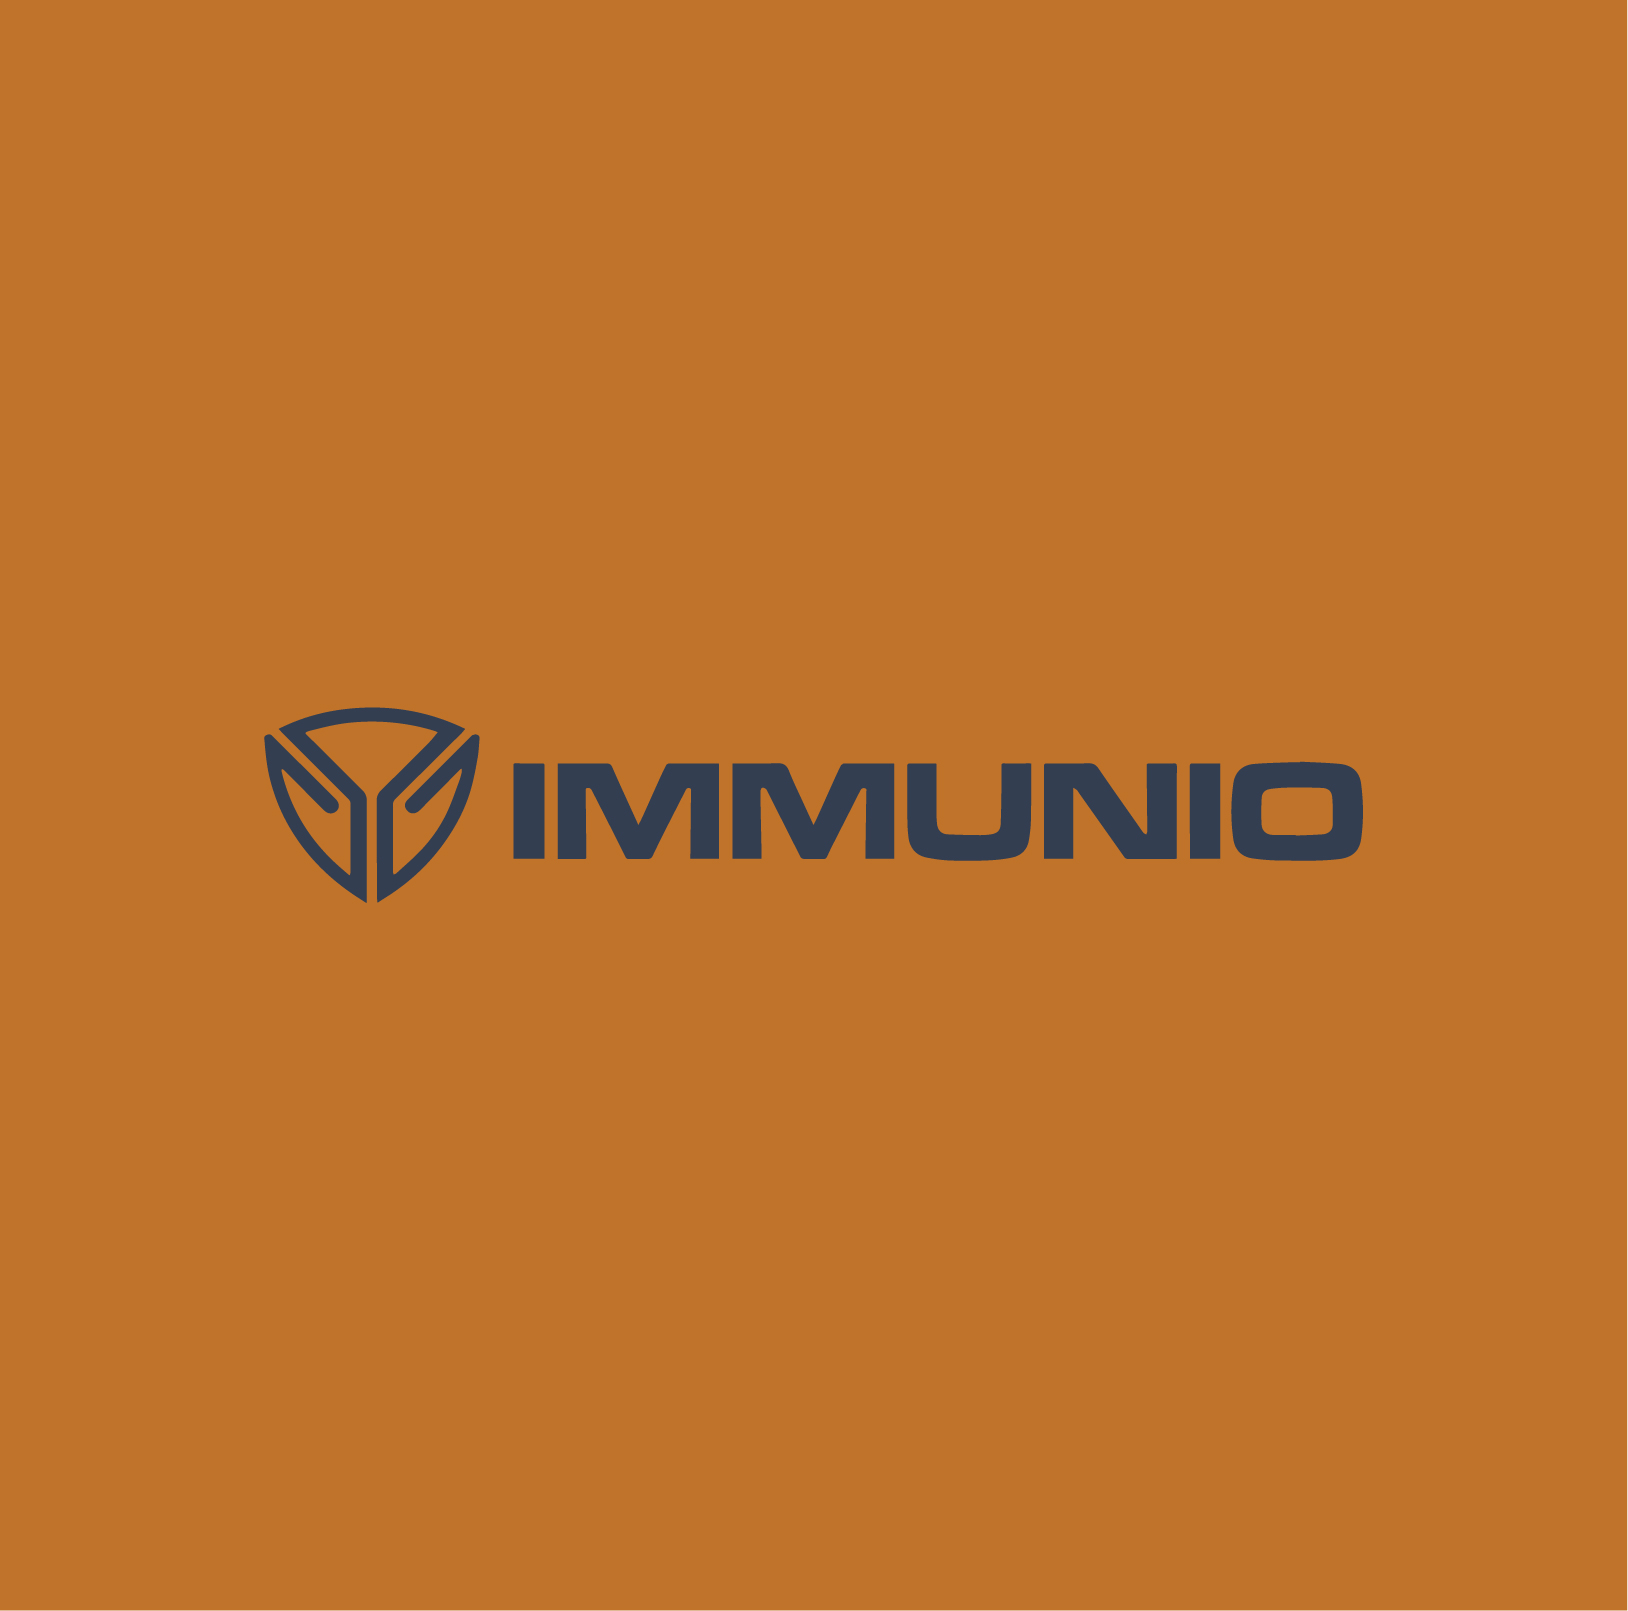 Immunio